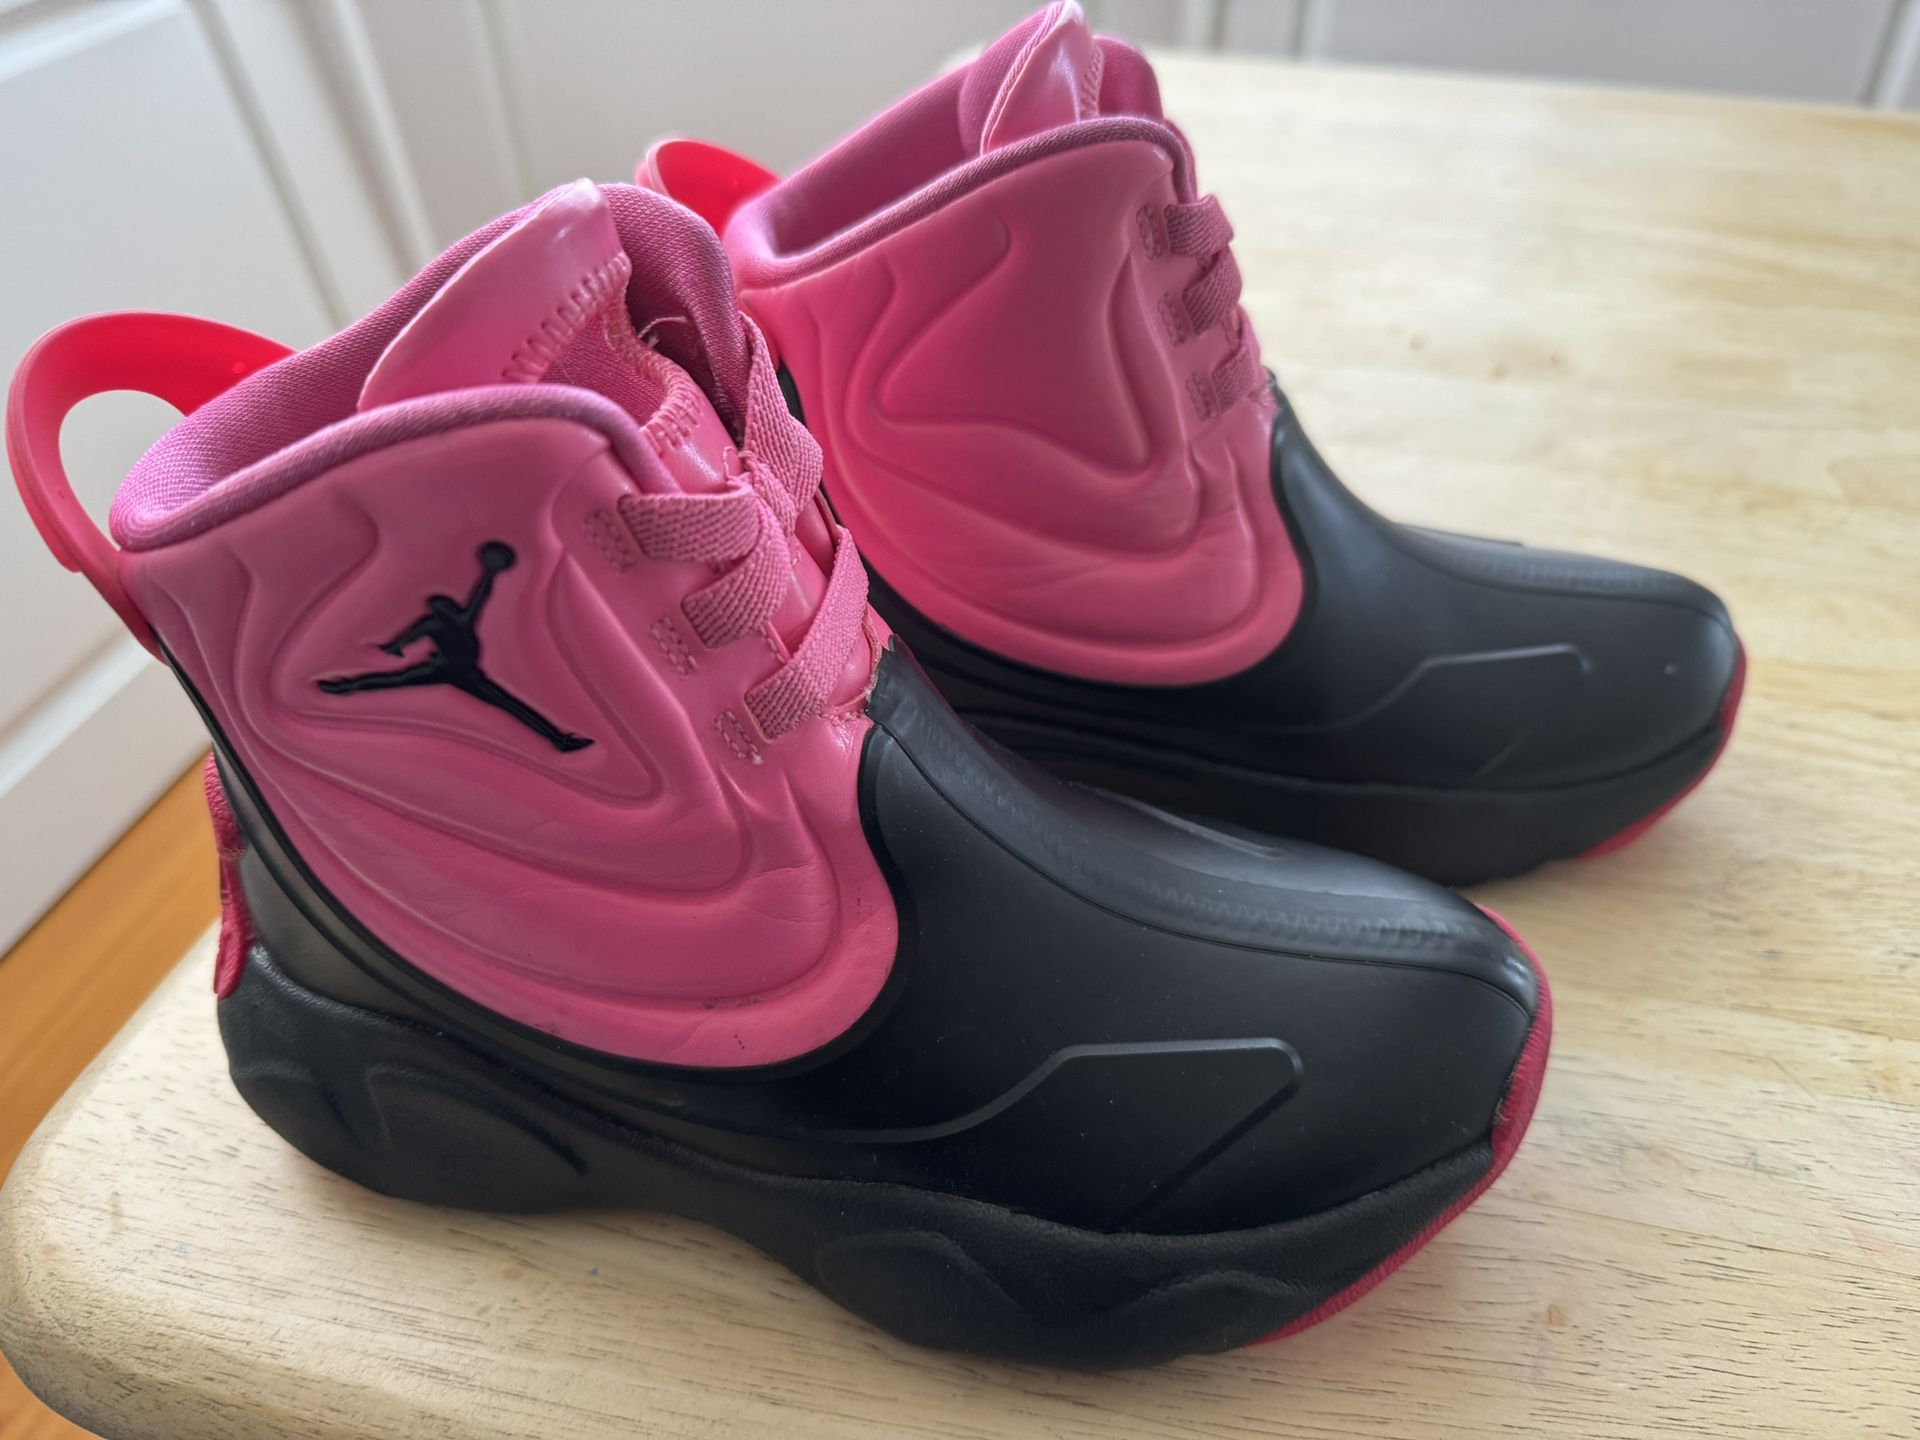 Toddler Girls Rain Boots Nike Jordan